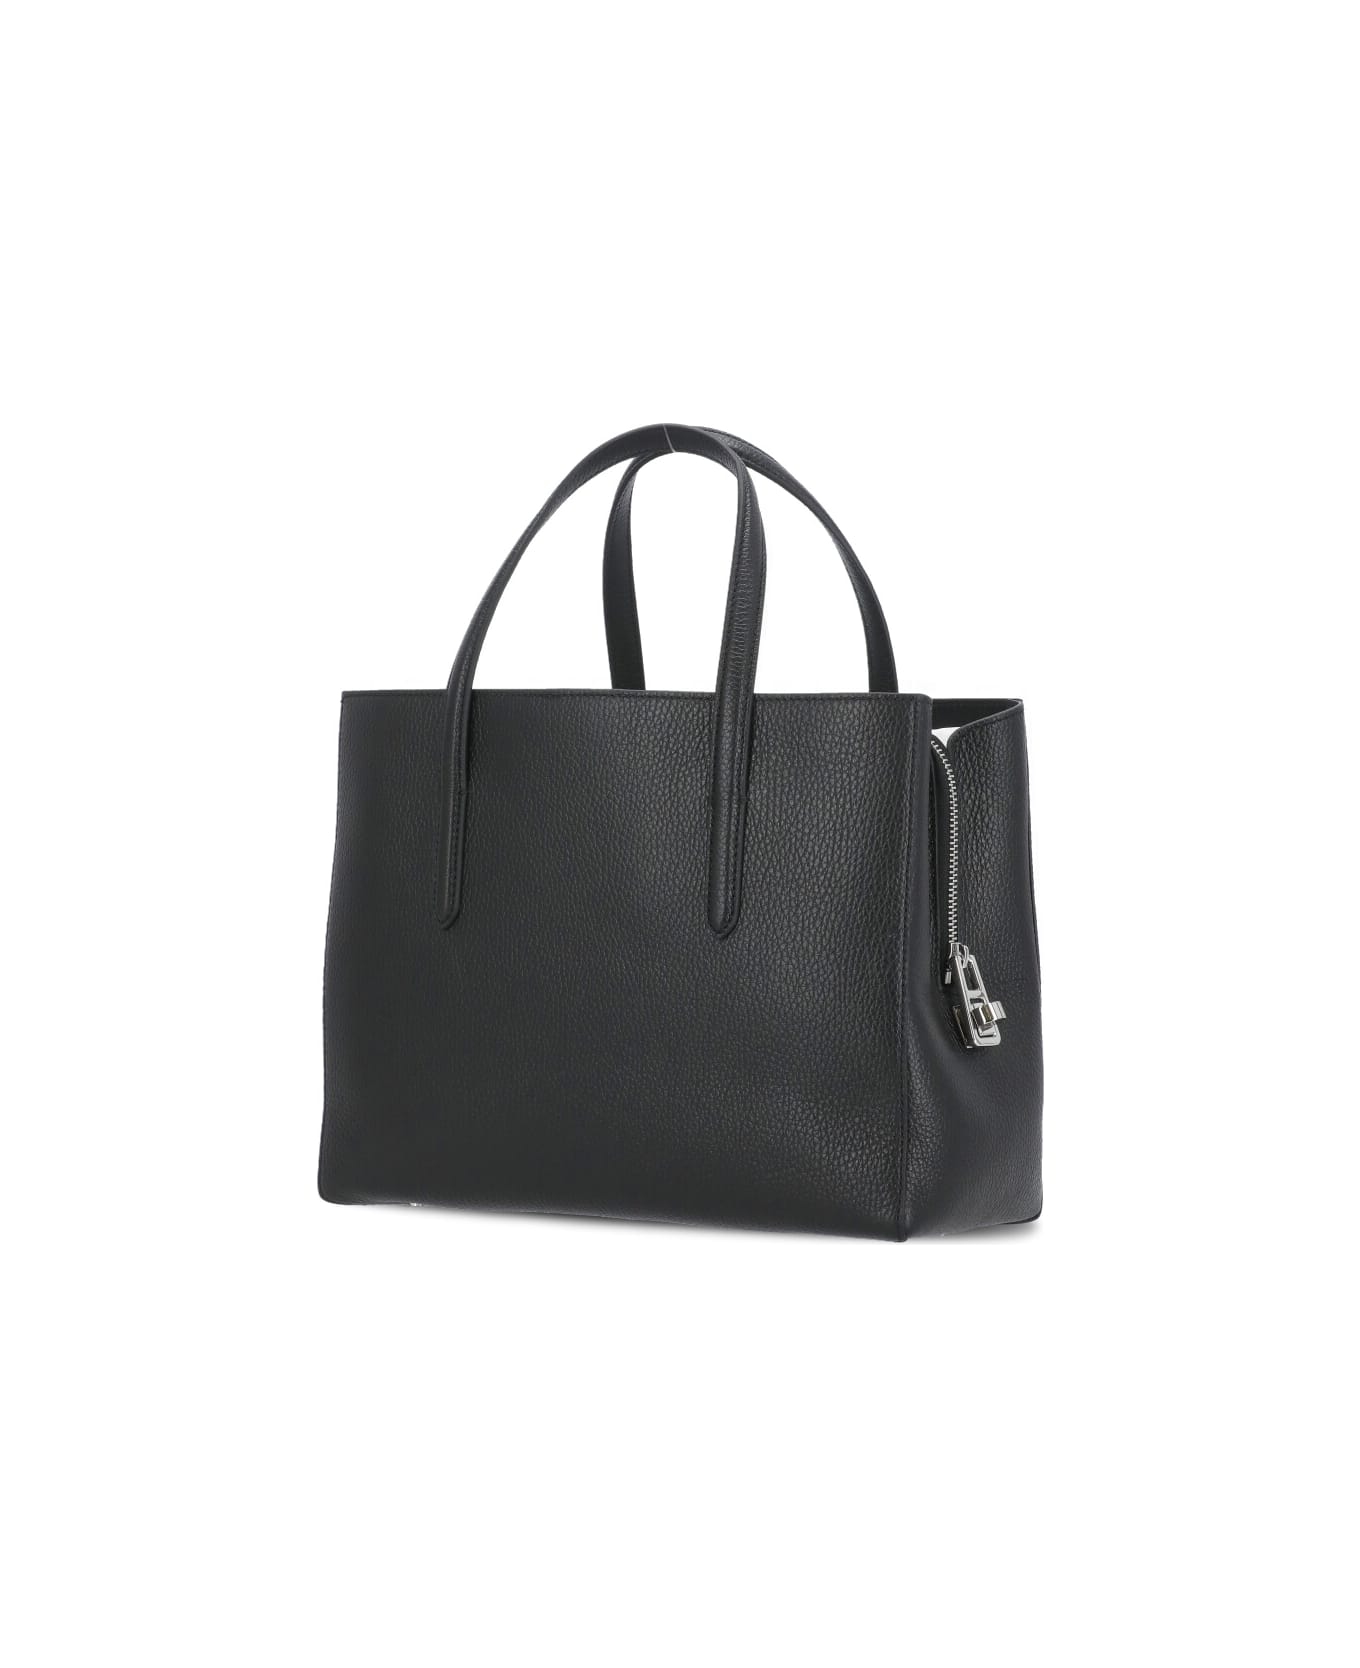 Coccinelle Swap Handbag - Black